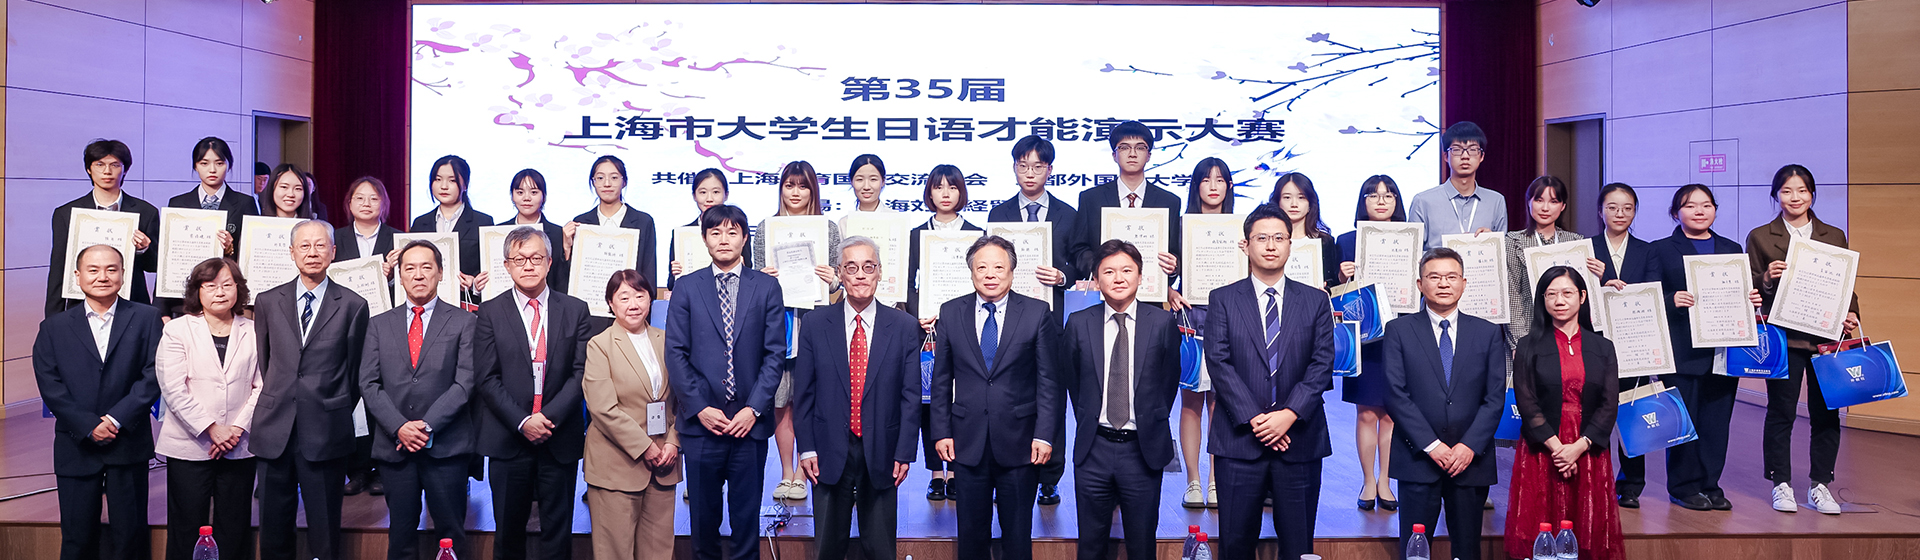 第三十五届上海市大学生日语才能演示大赛成功举办